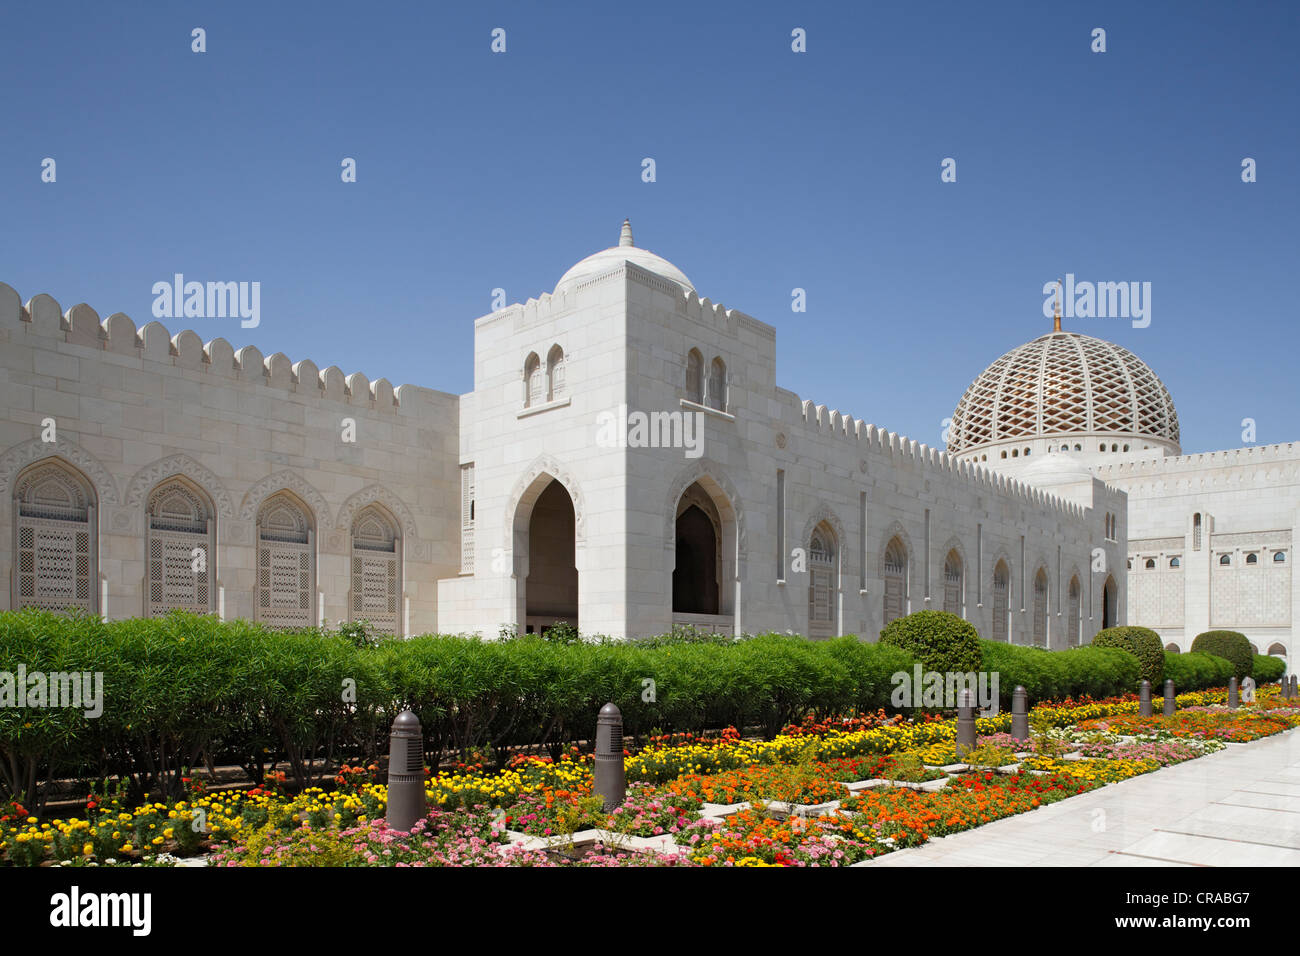 Sultan Qaboos Grand Mosque und Blume Bett, Vorplatz, Hauptstadt Muscat, Sultanat von Oman, Golfstaaten, Arabische Halbinsel Stockfoto